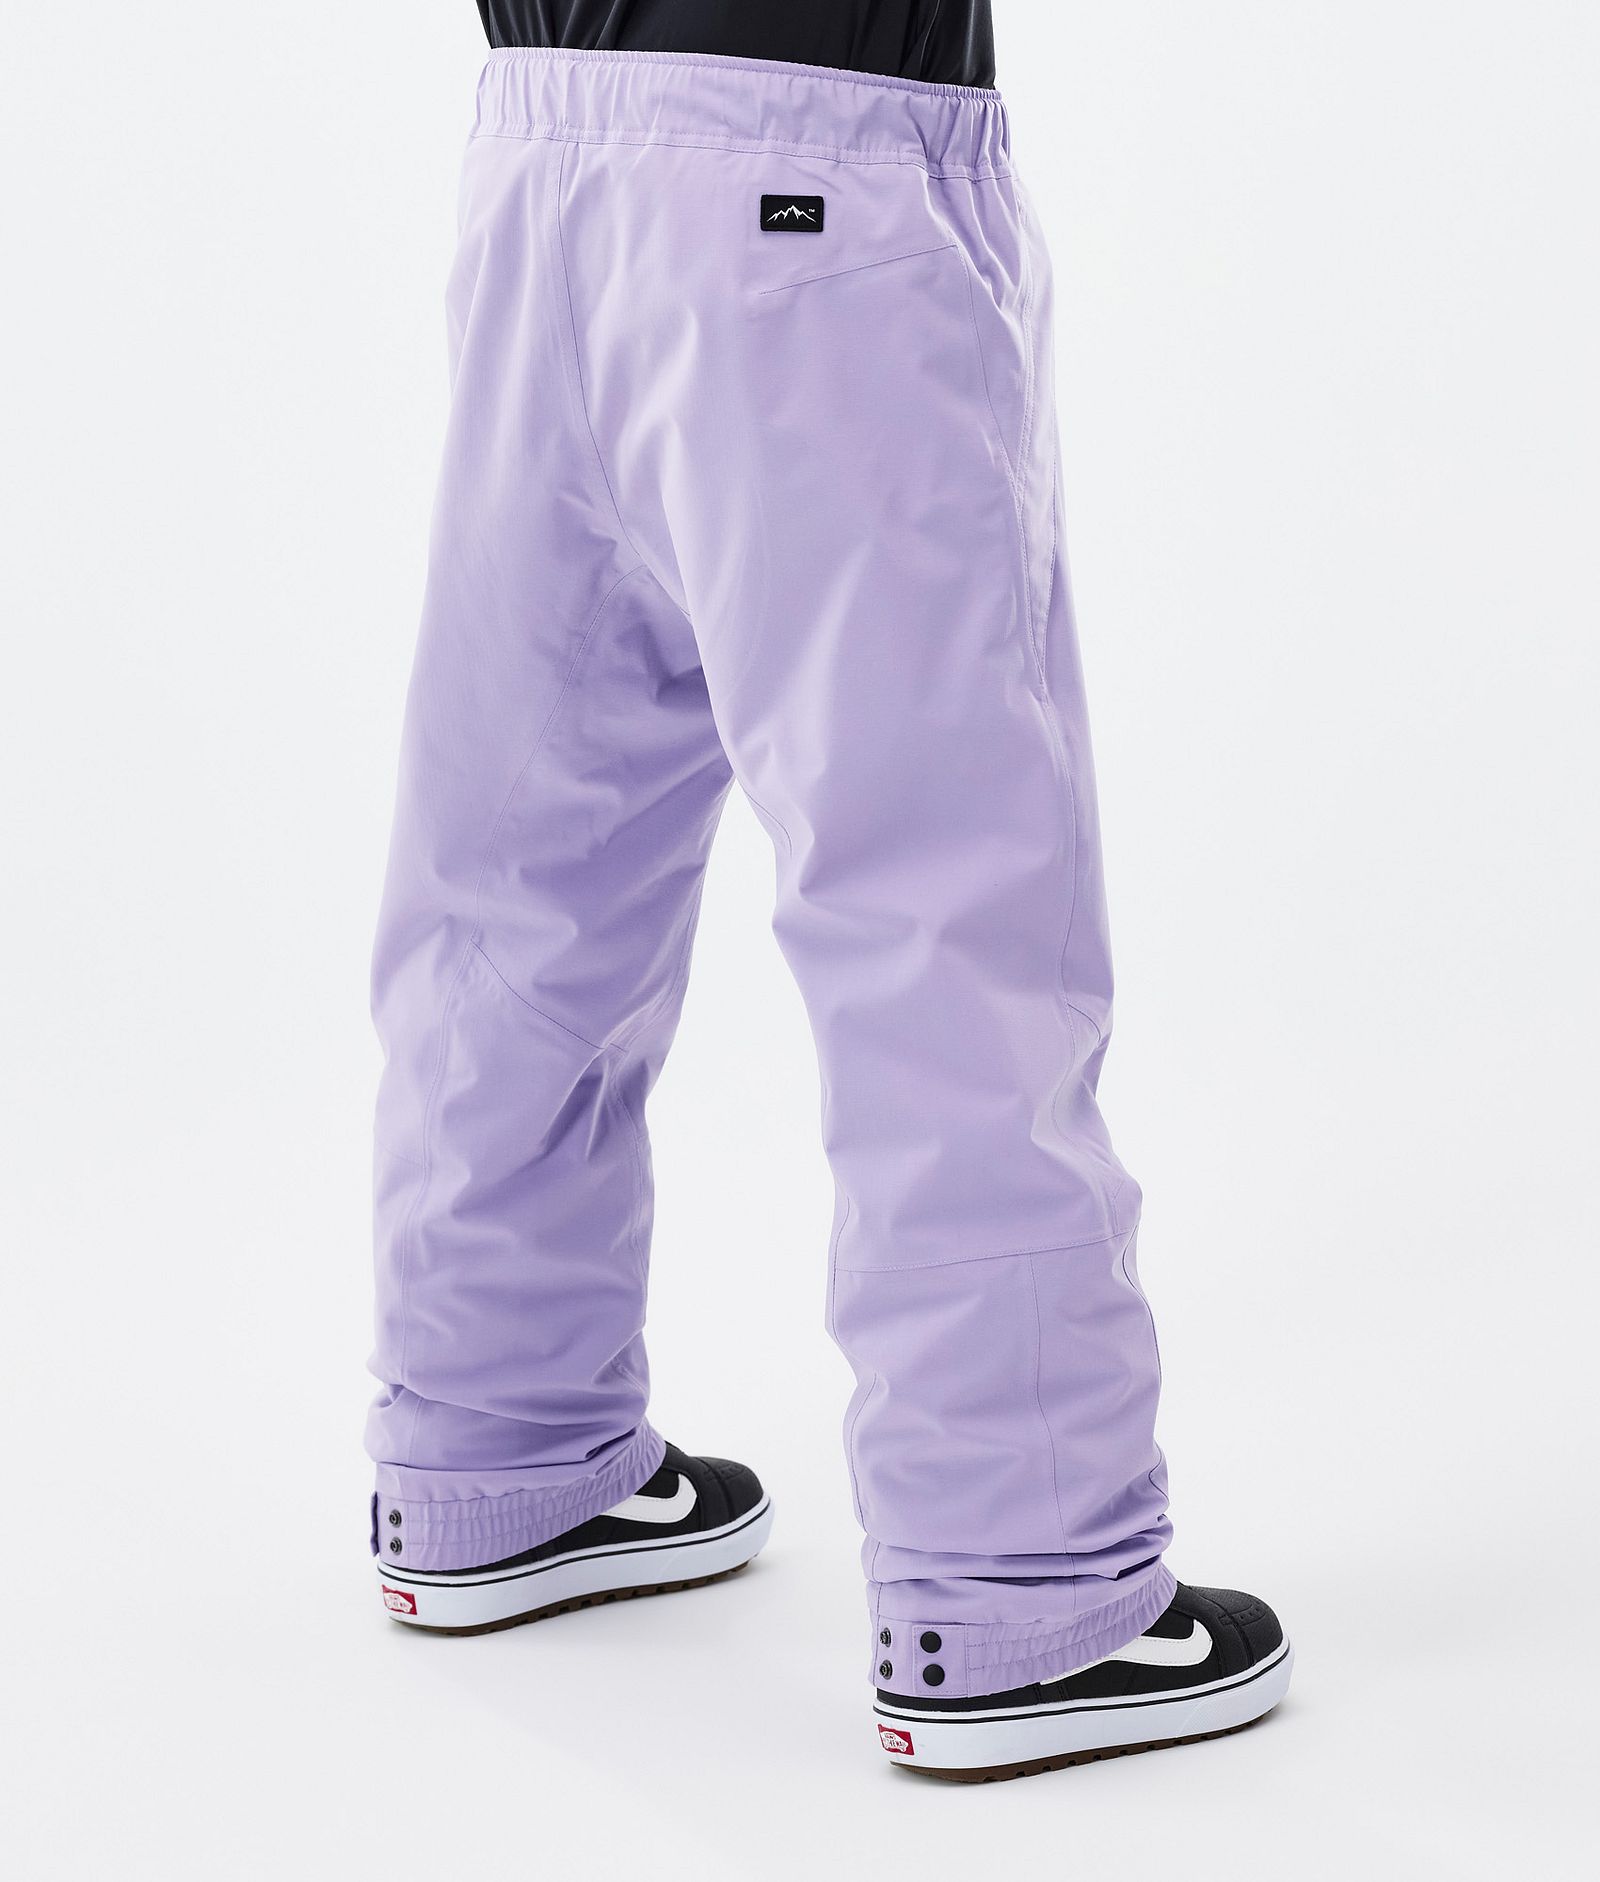 Blizzard Pantalon de Snowboard Homme Faded Violet